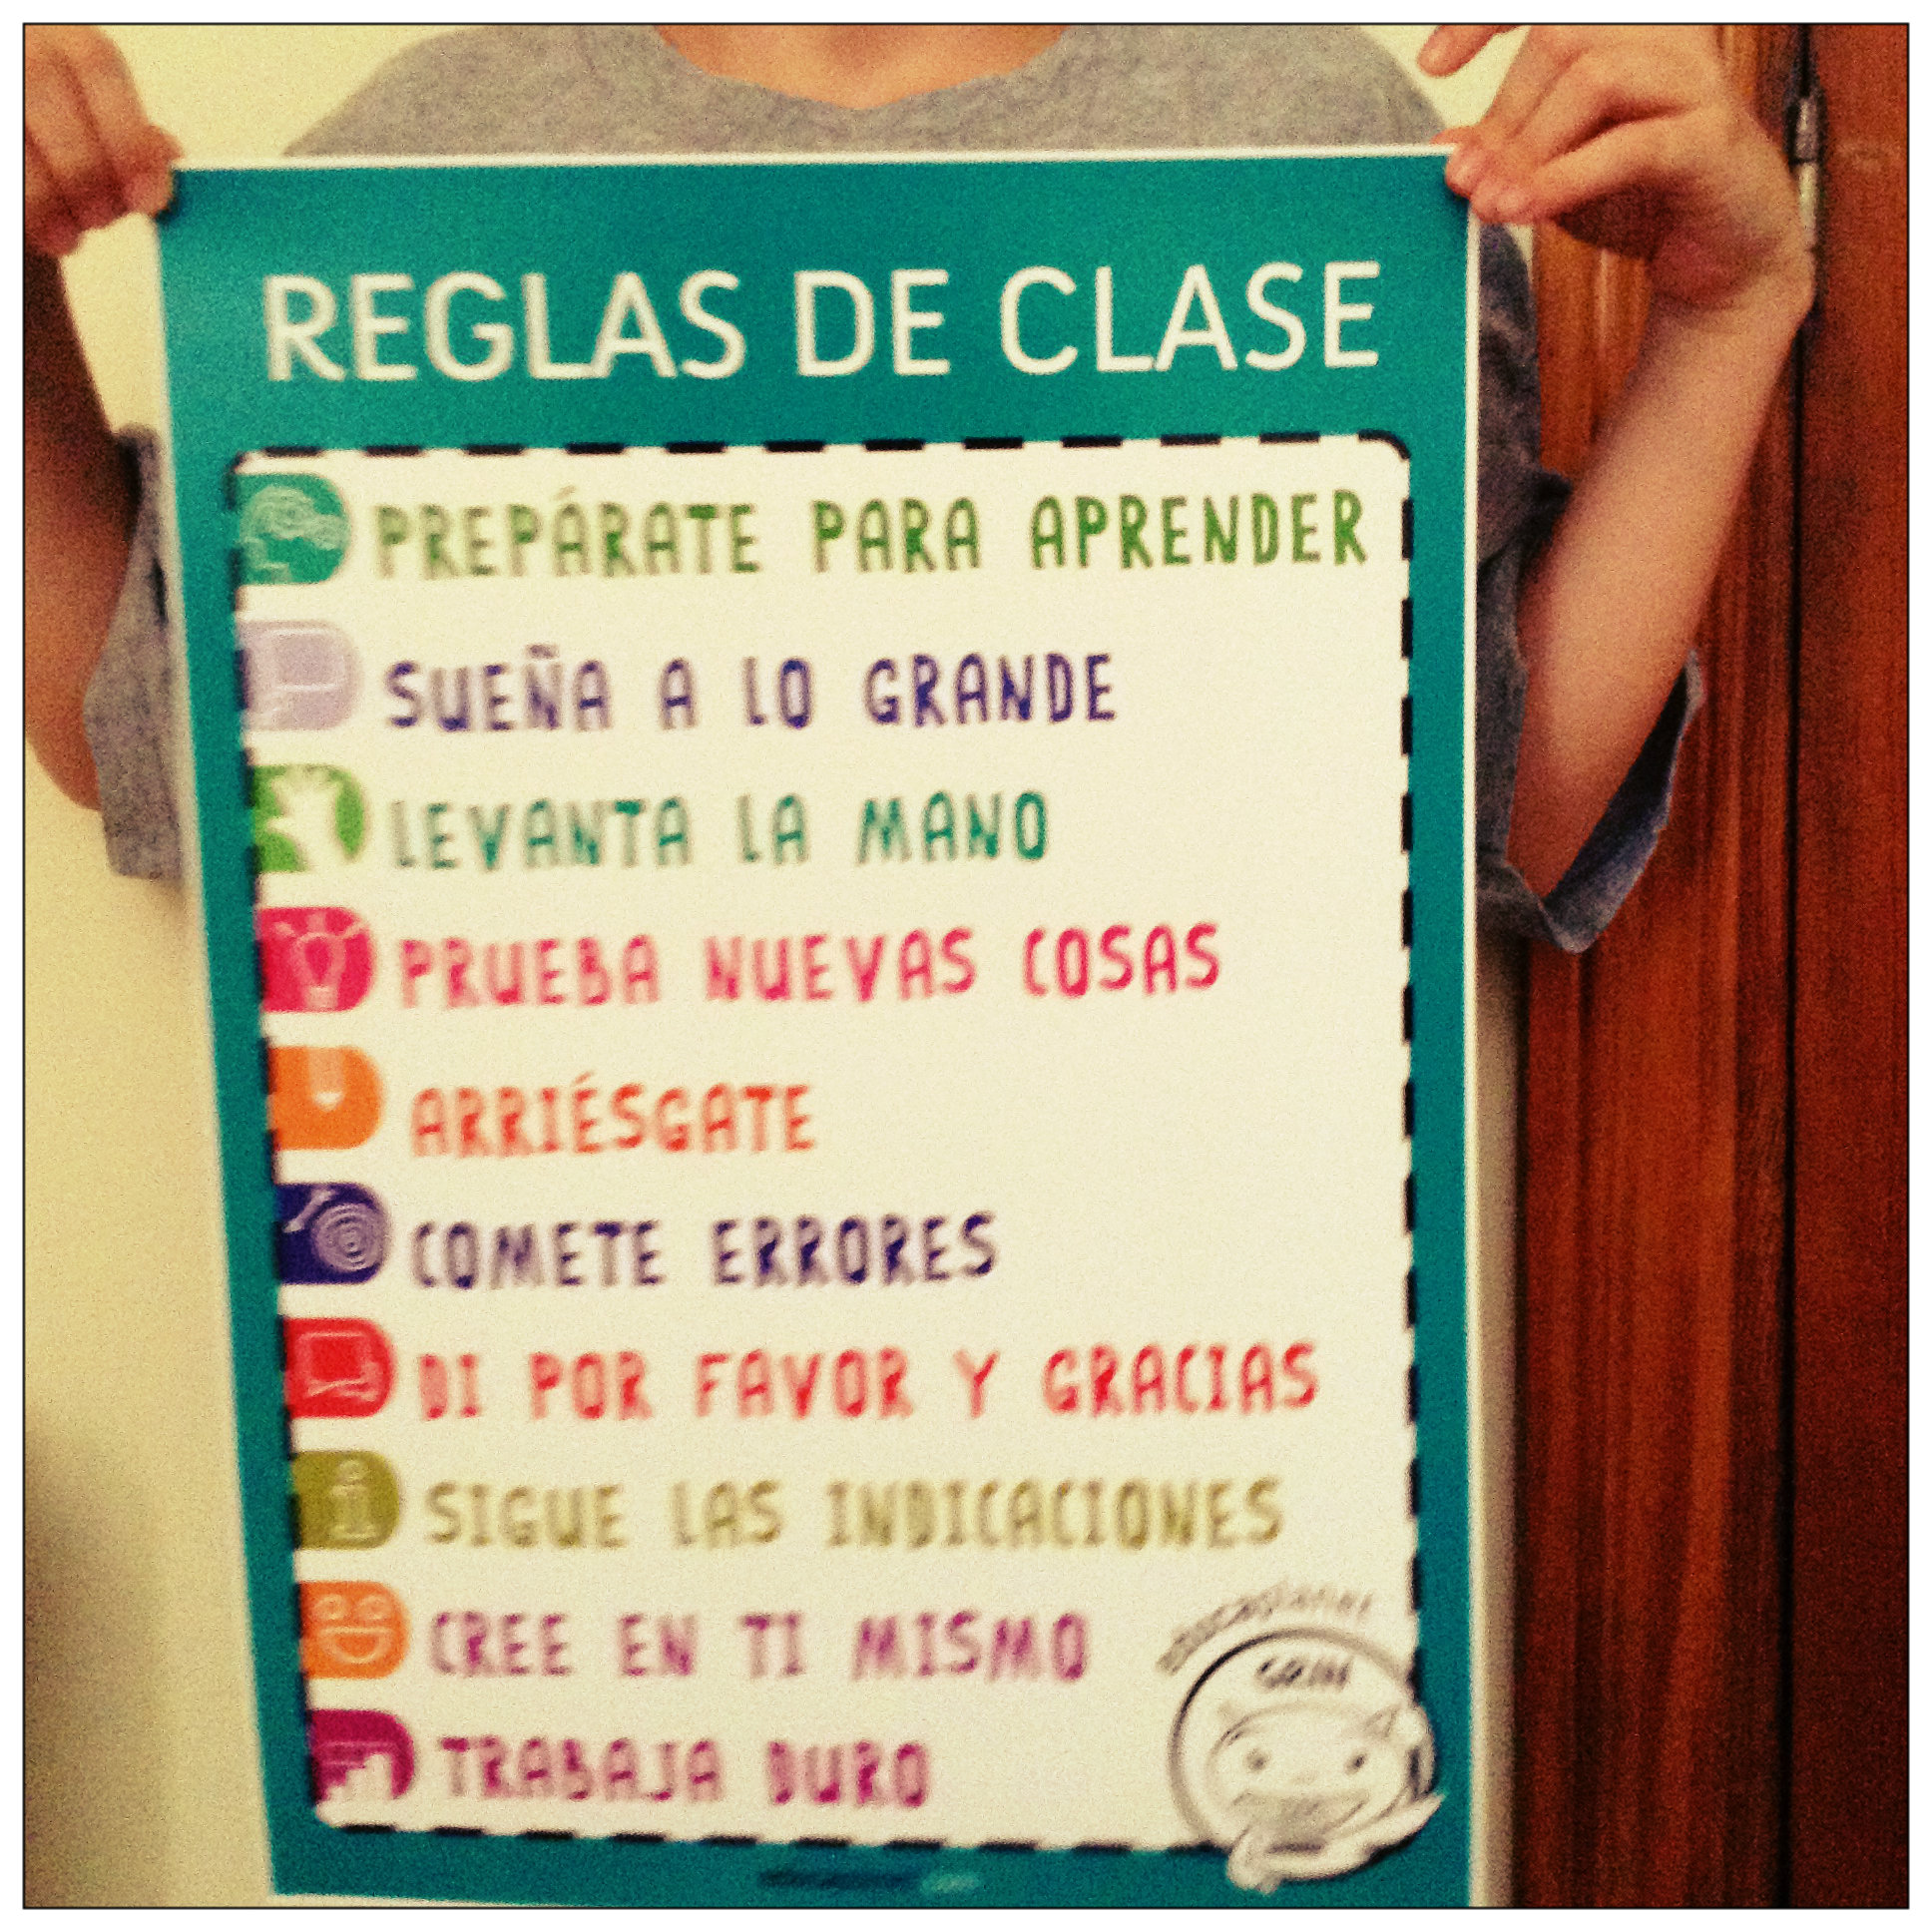 Reglas De Clase Un Poster O Cartel Para El Aula Educaplanet Apps 2571